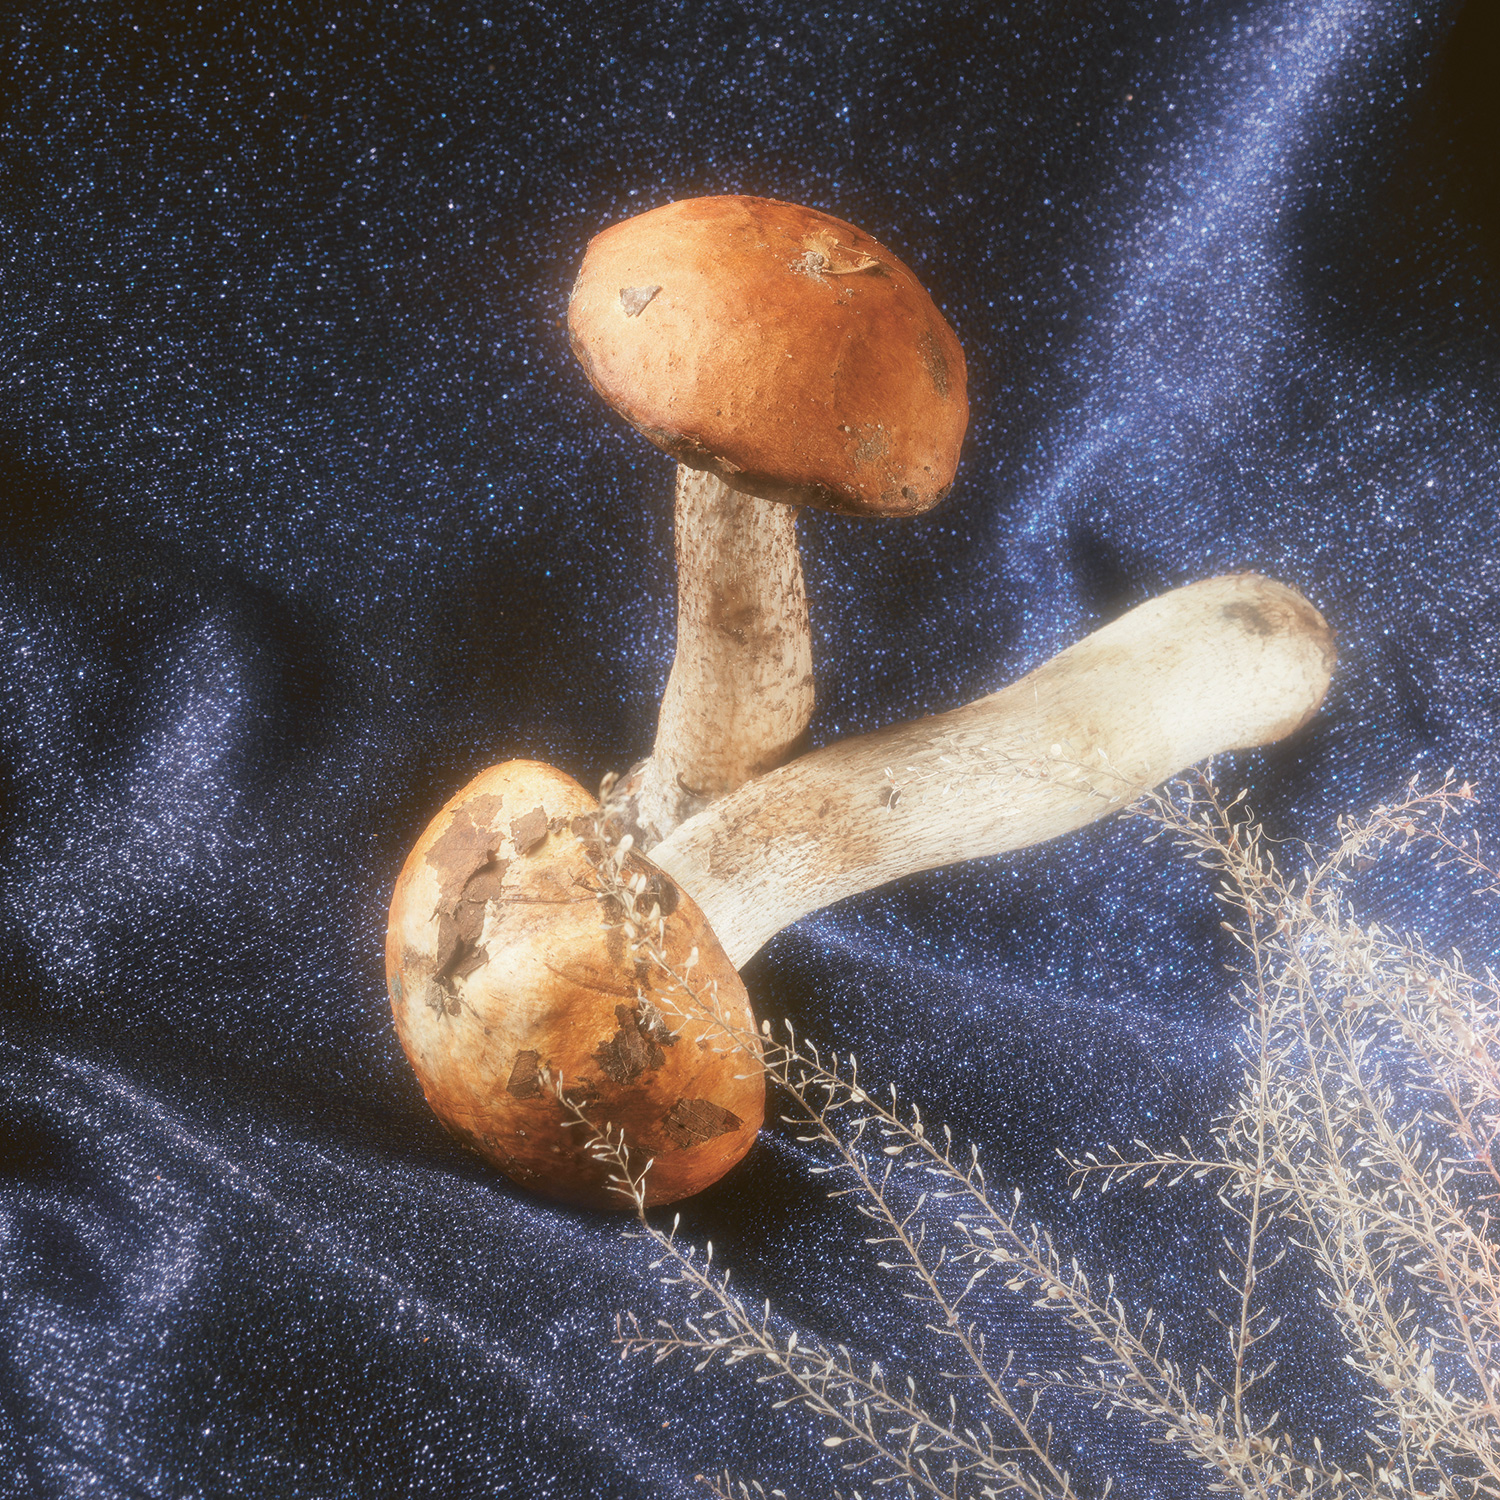 Подосиновик желто-бурый. Красивый гриб с яркой шляпкой, который приятно искать под папоротниками и на поваленных березах